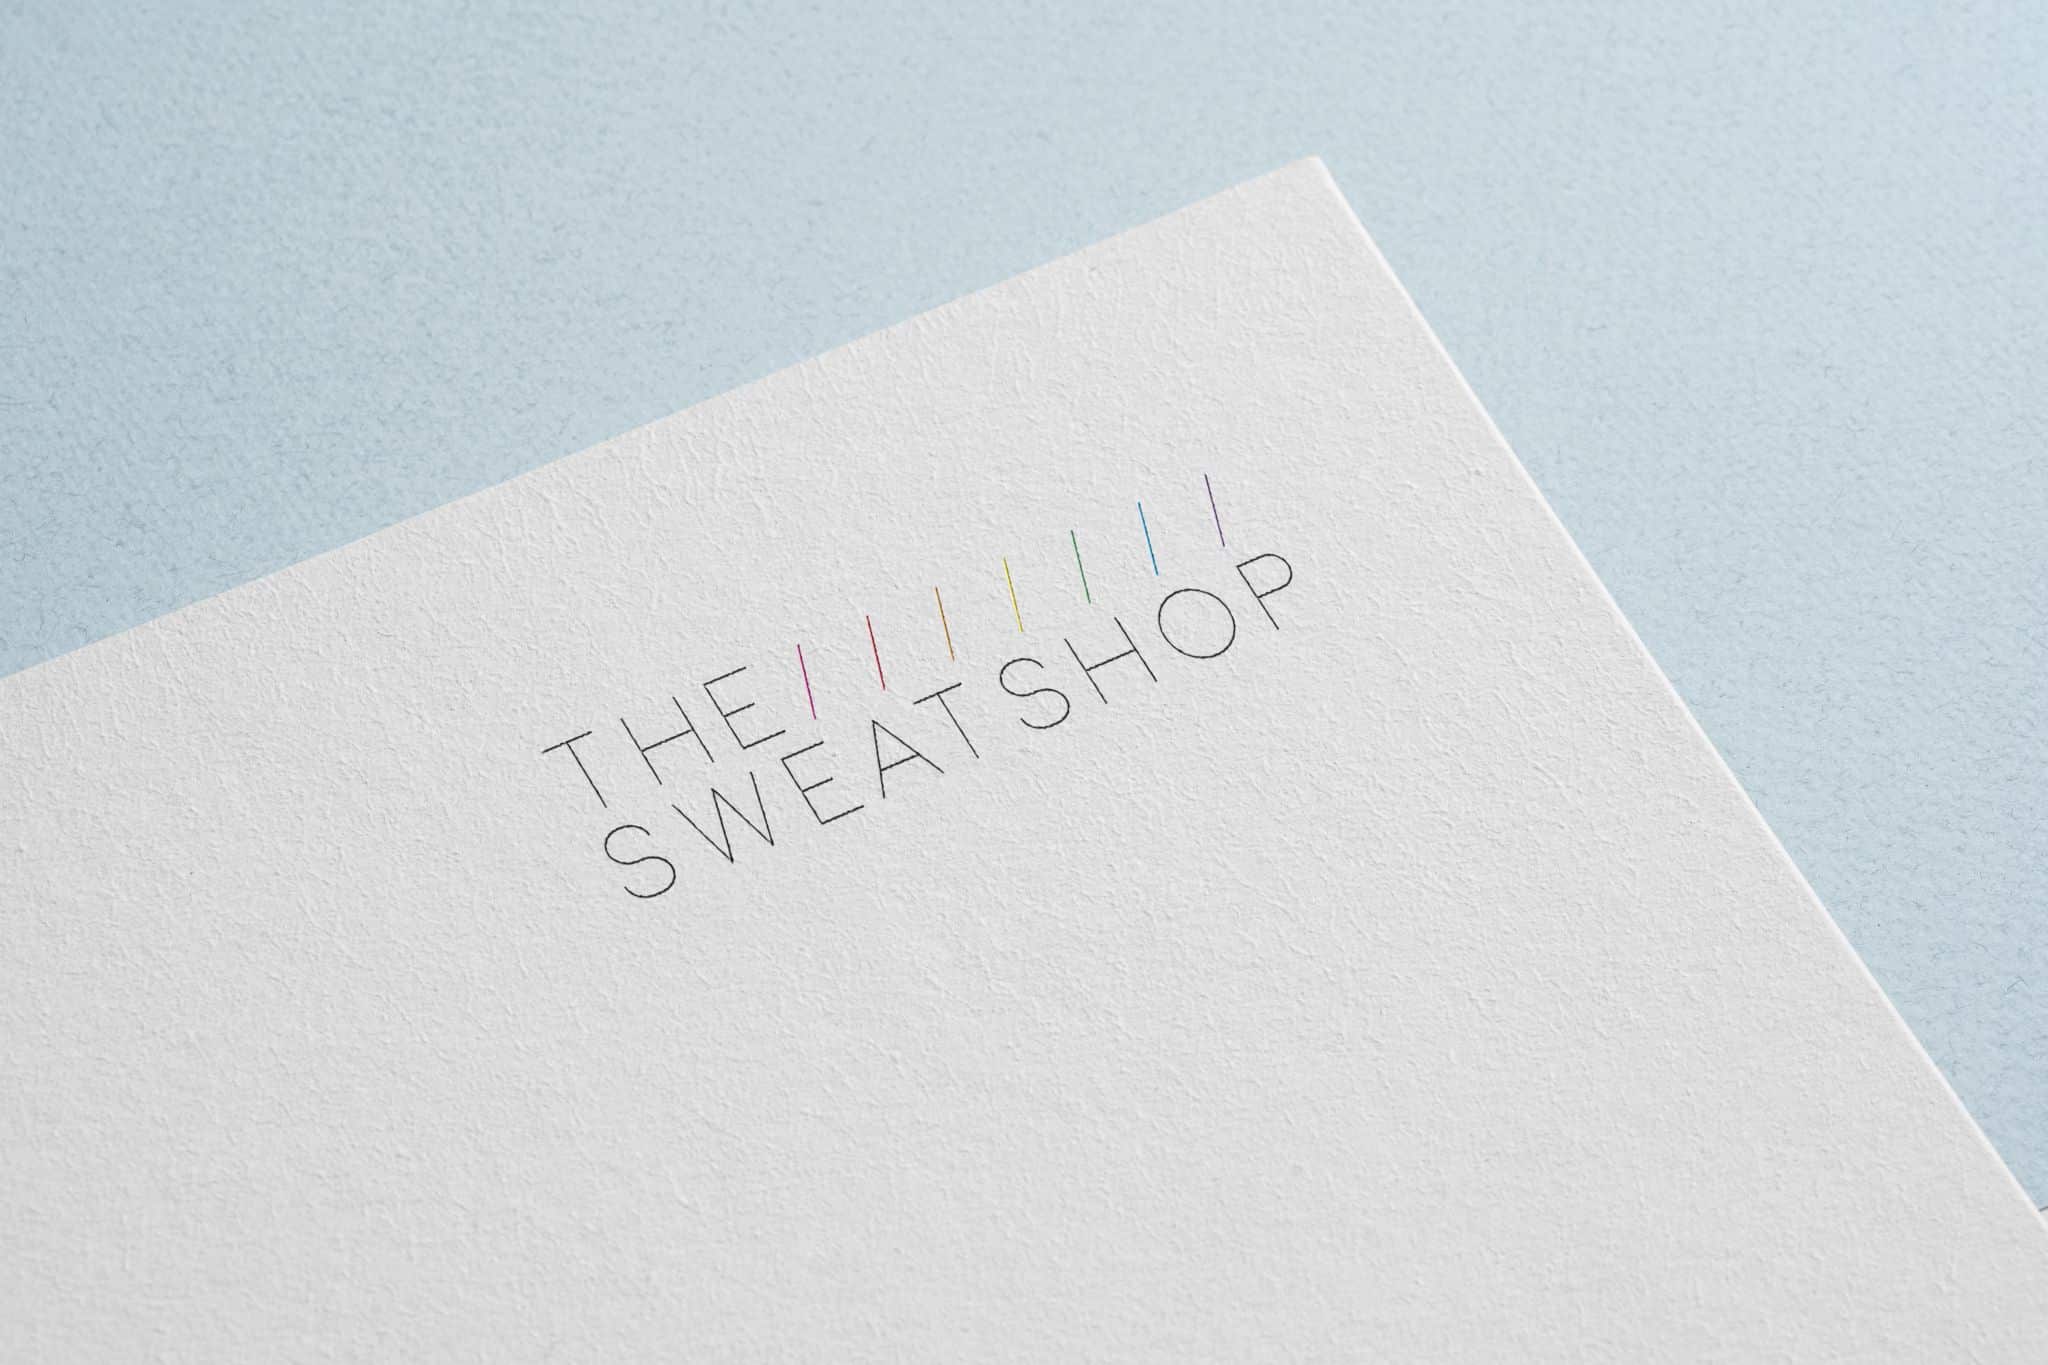 Branding the sweatshop 12